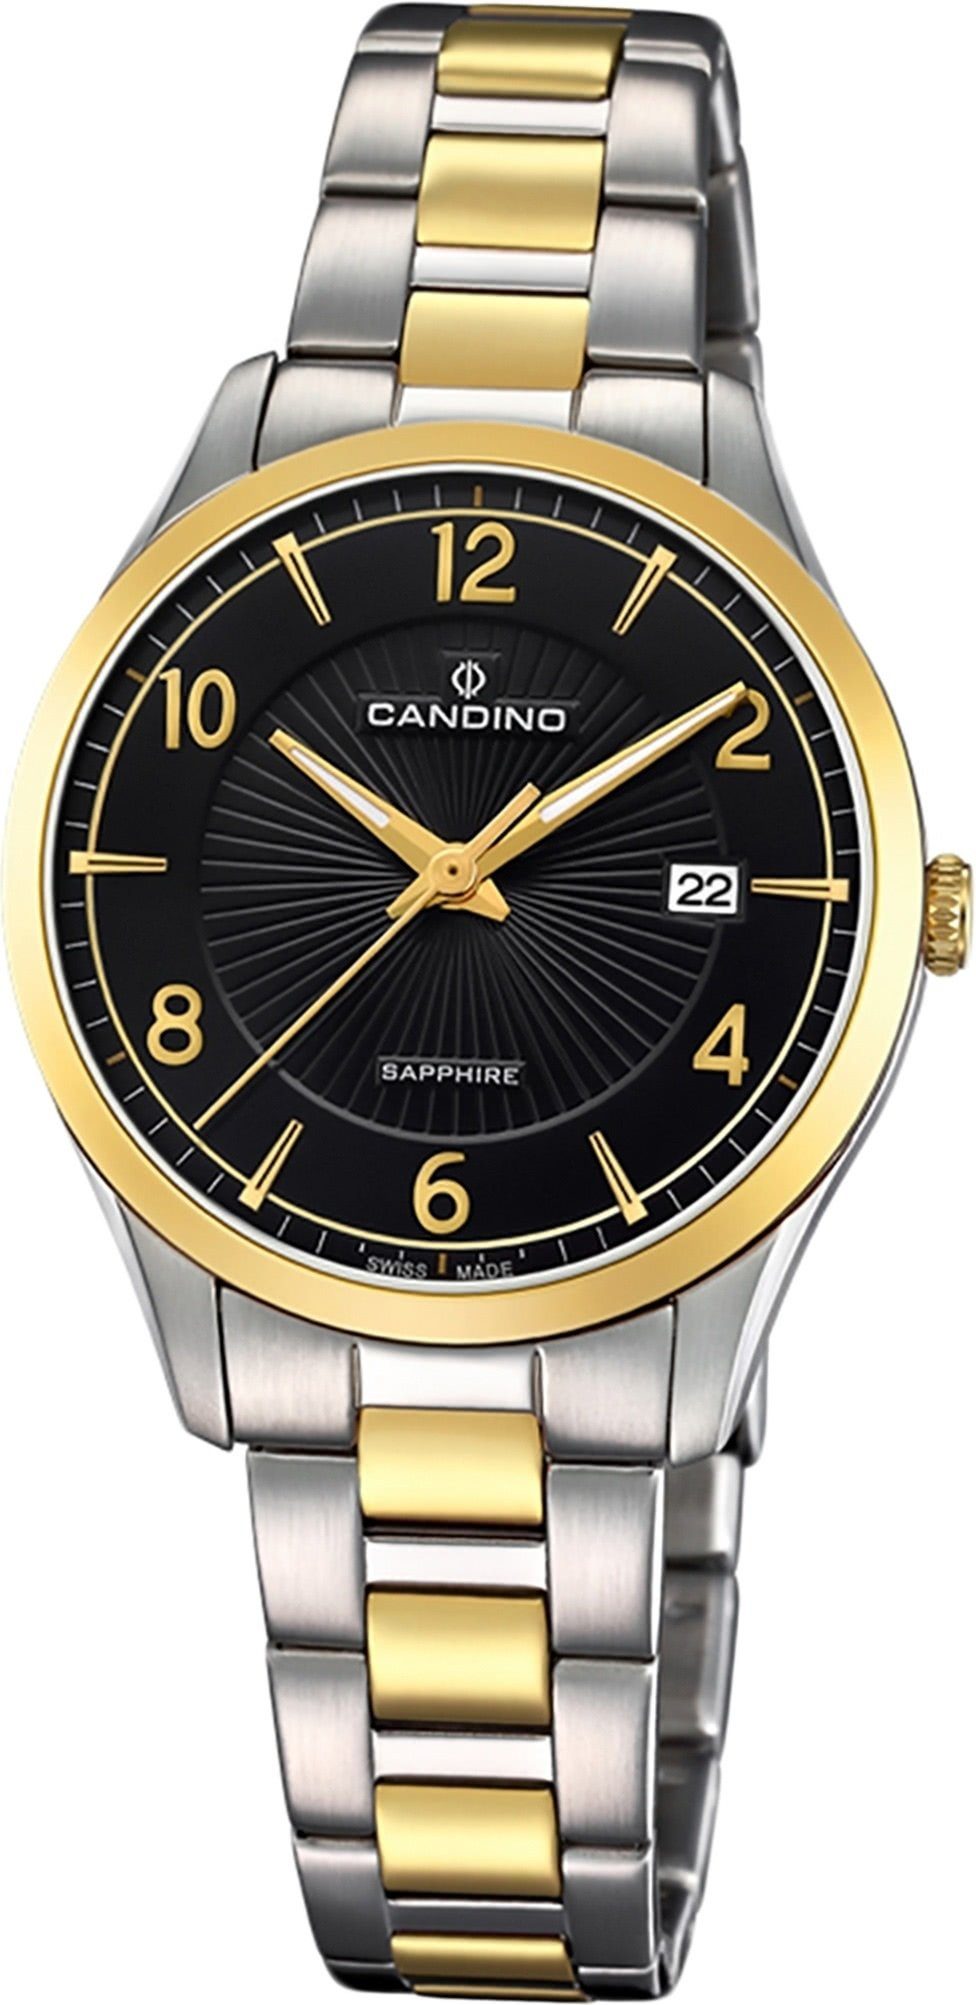 Eleg Uhr, rundes Edelstahl Gehäuse, Classic Quarzuhr Damen (ca. Candino 31mm), Candino Edelstahlarmband, Damenuhr mit mittel